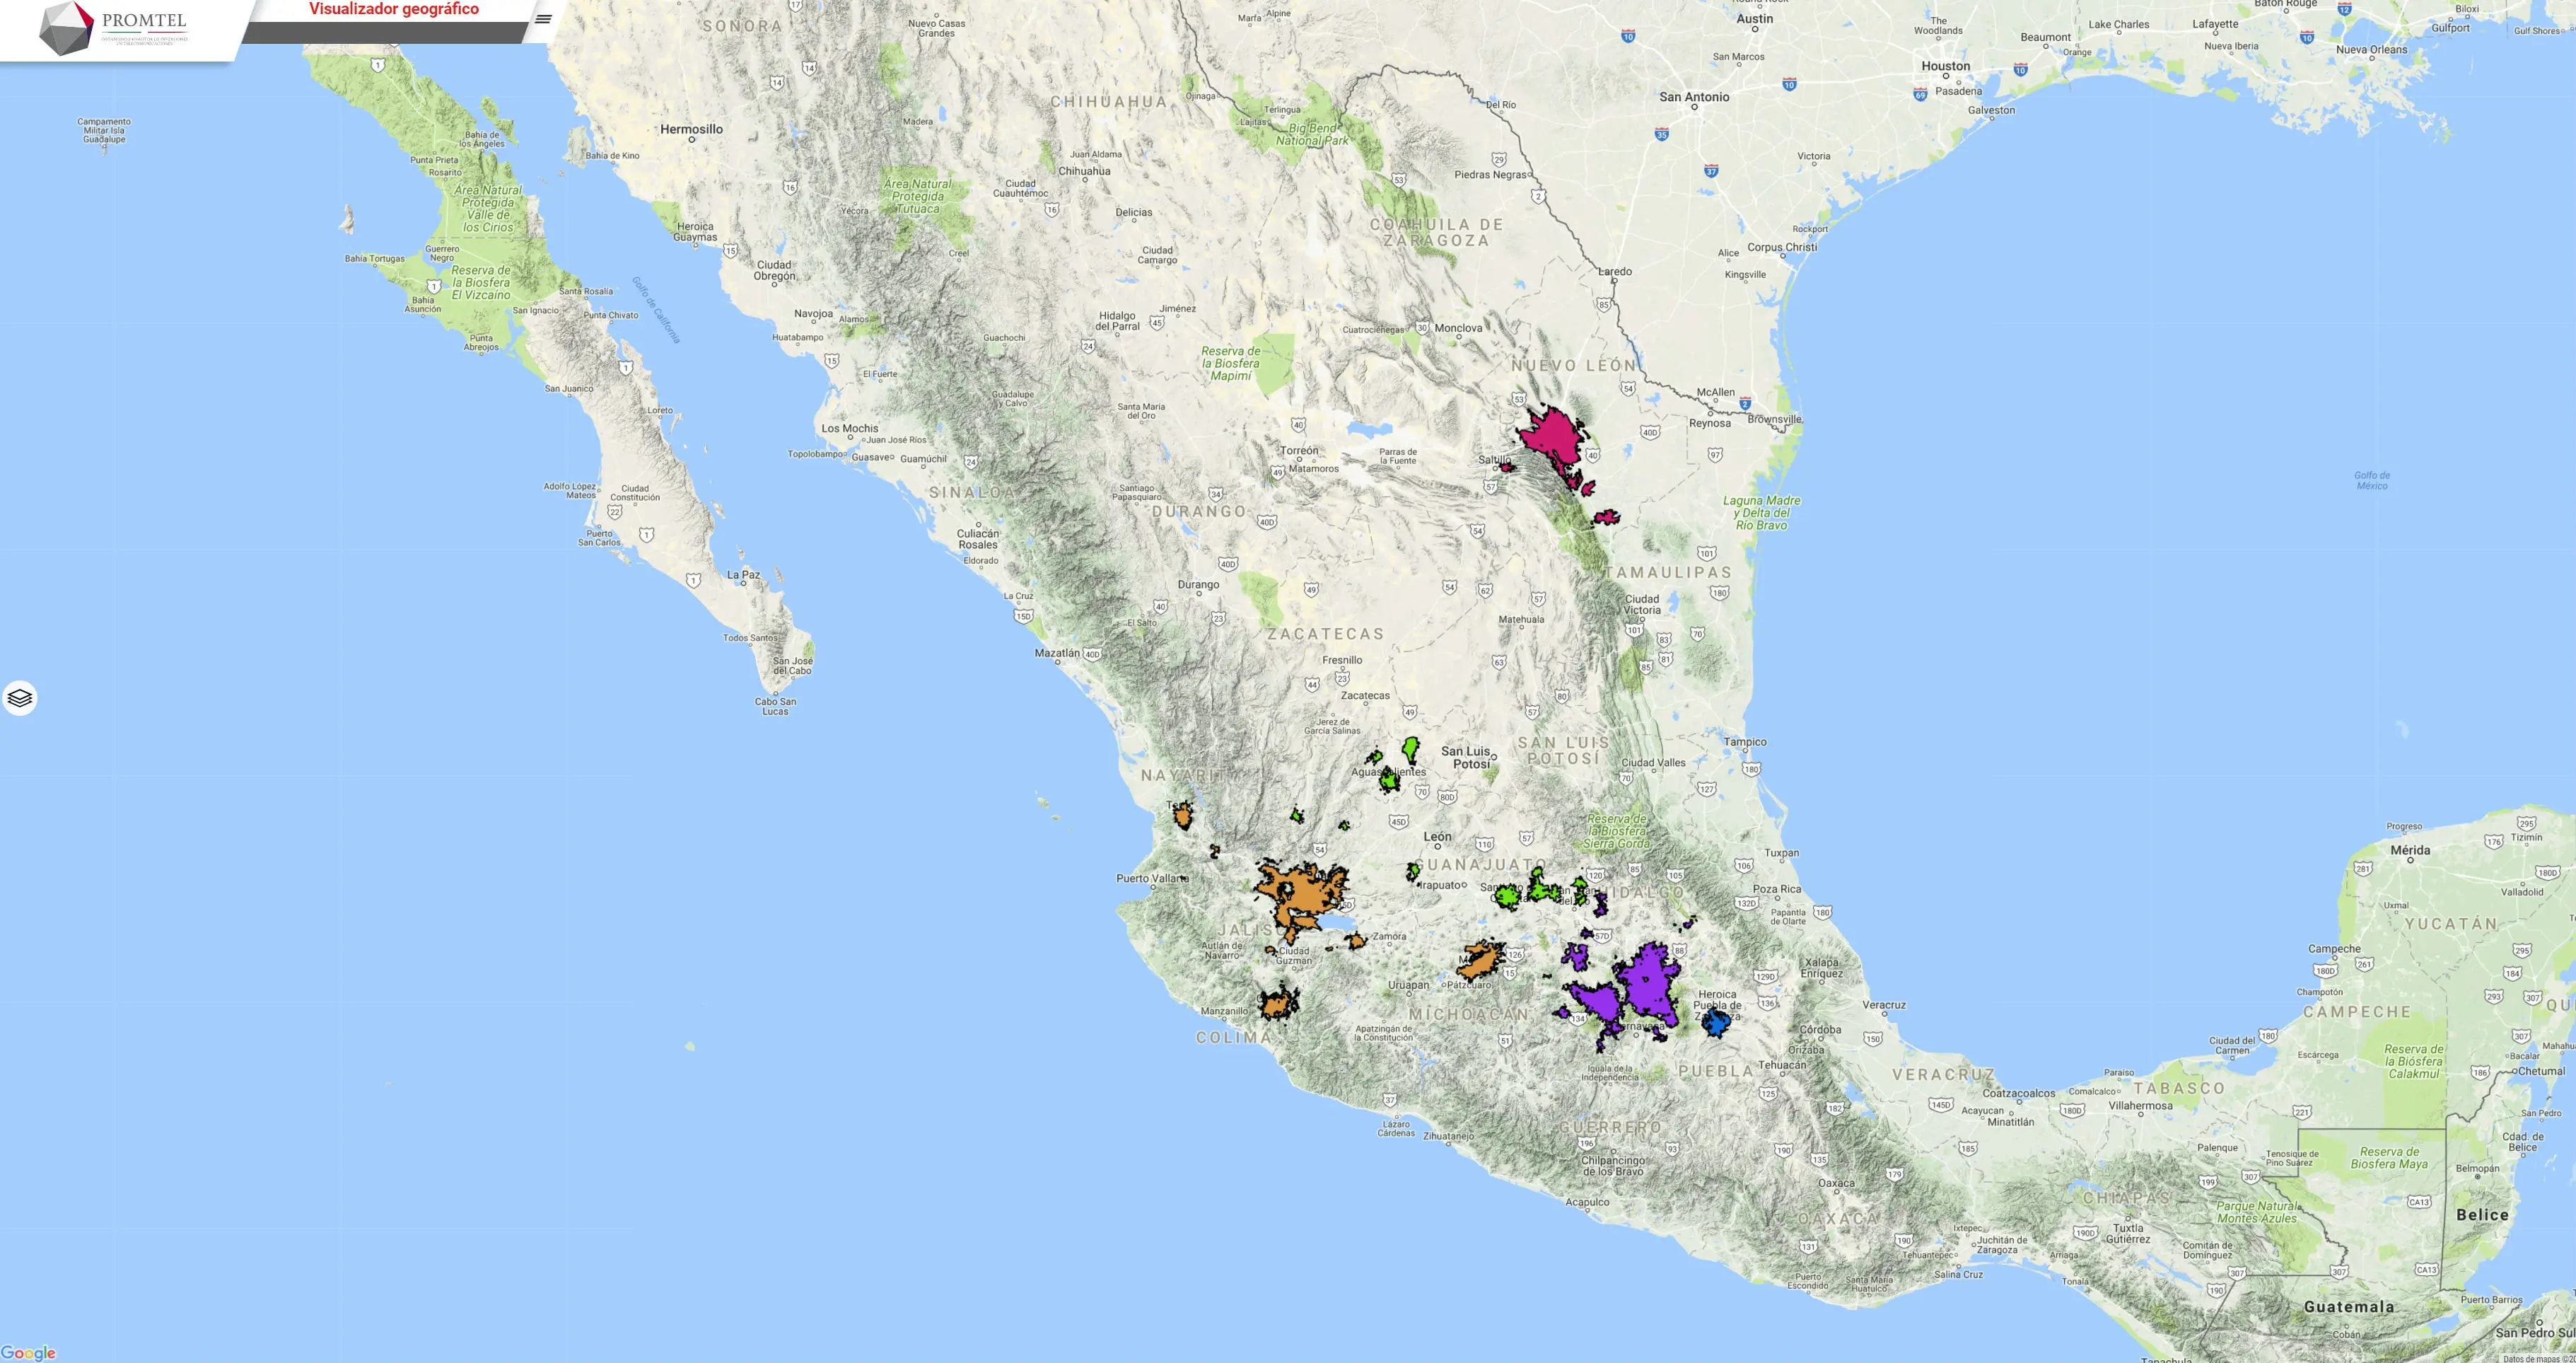 Red Compartida comienza operaciones en 11 ciudades y 29 pueblos magicos de México